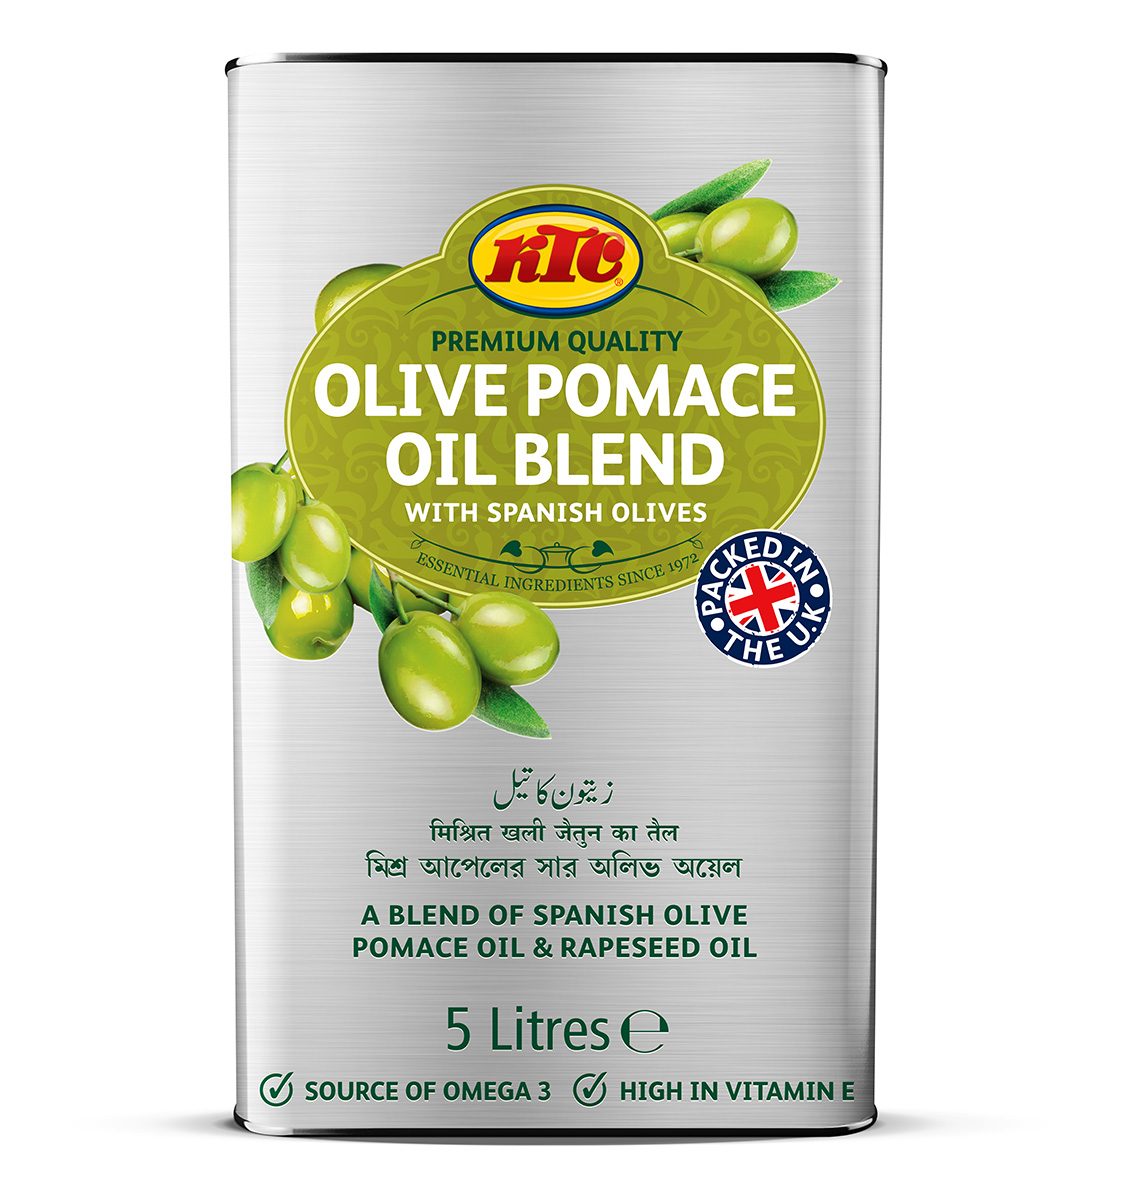 KTC Blended Olive Pomace Oil 5L *LIMITED TIME OFFER*